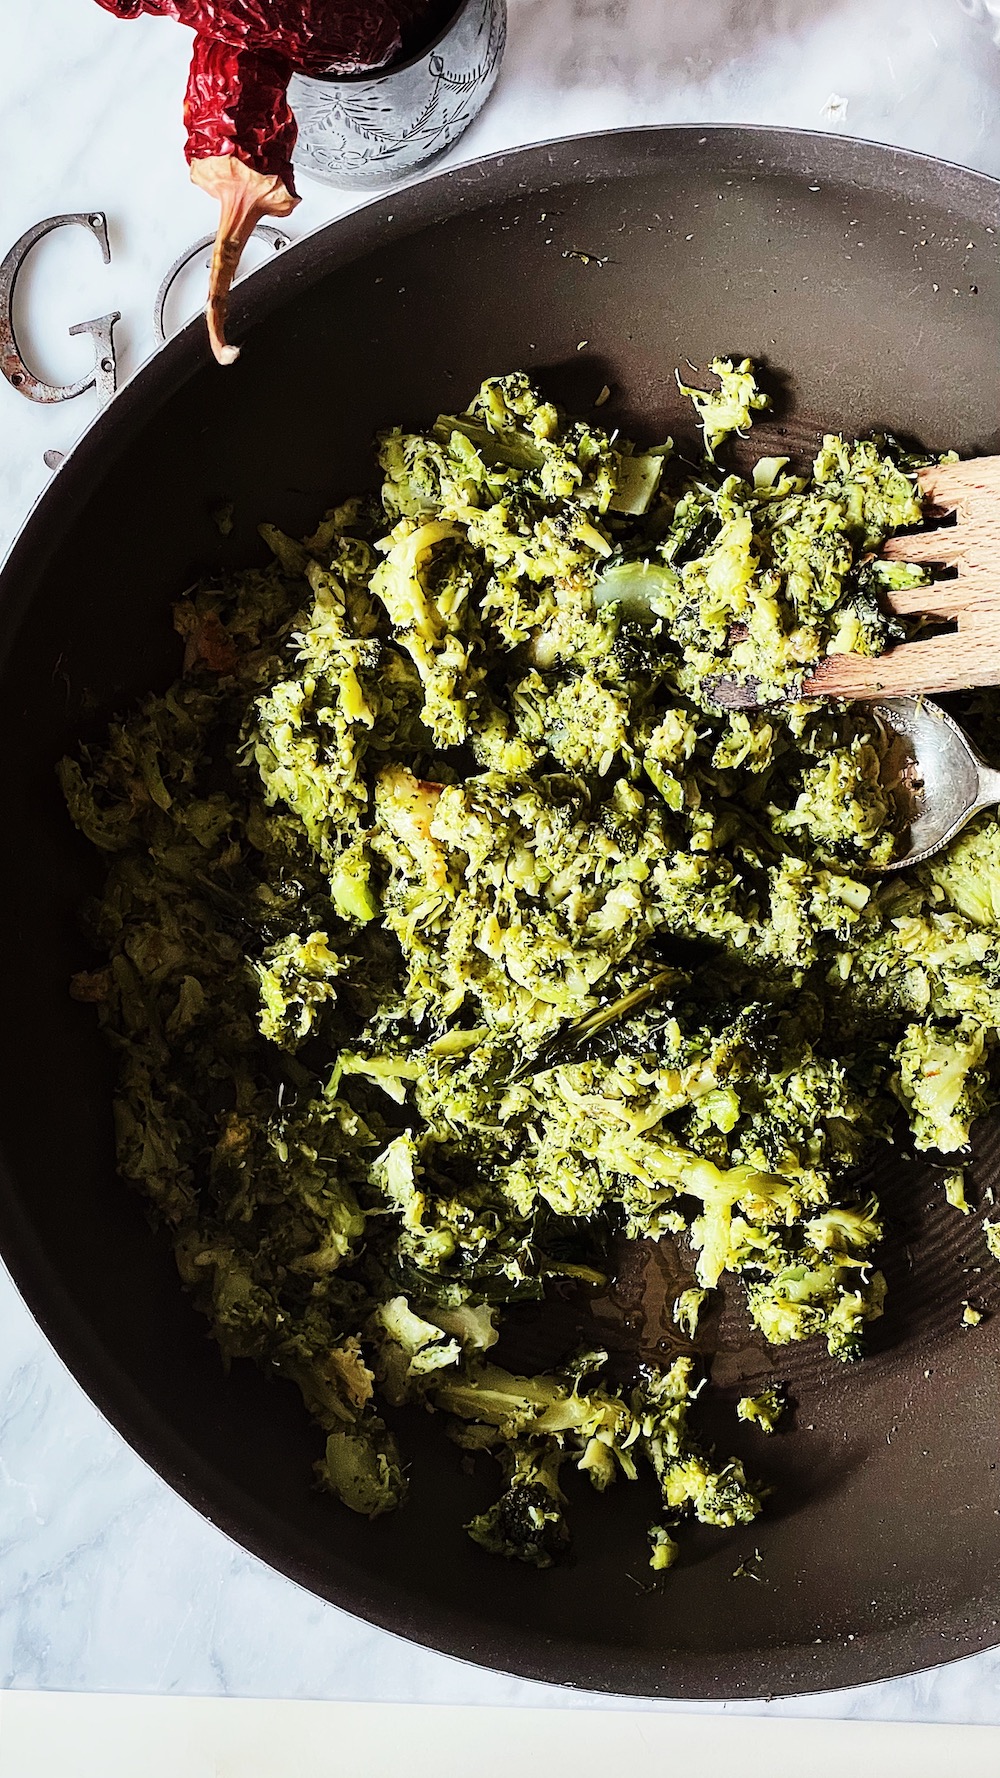 Italian-style sautéed broccoli recipe